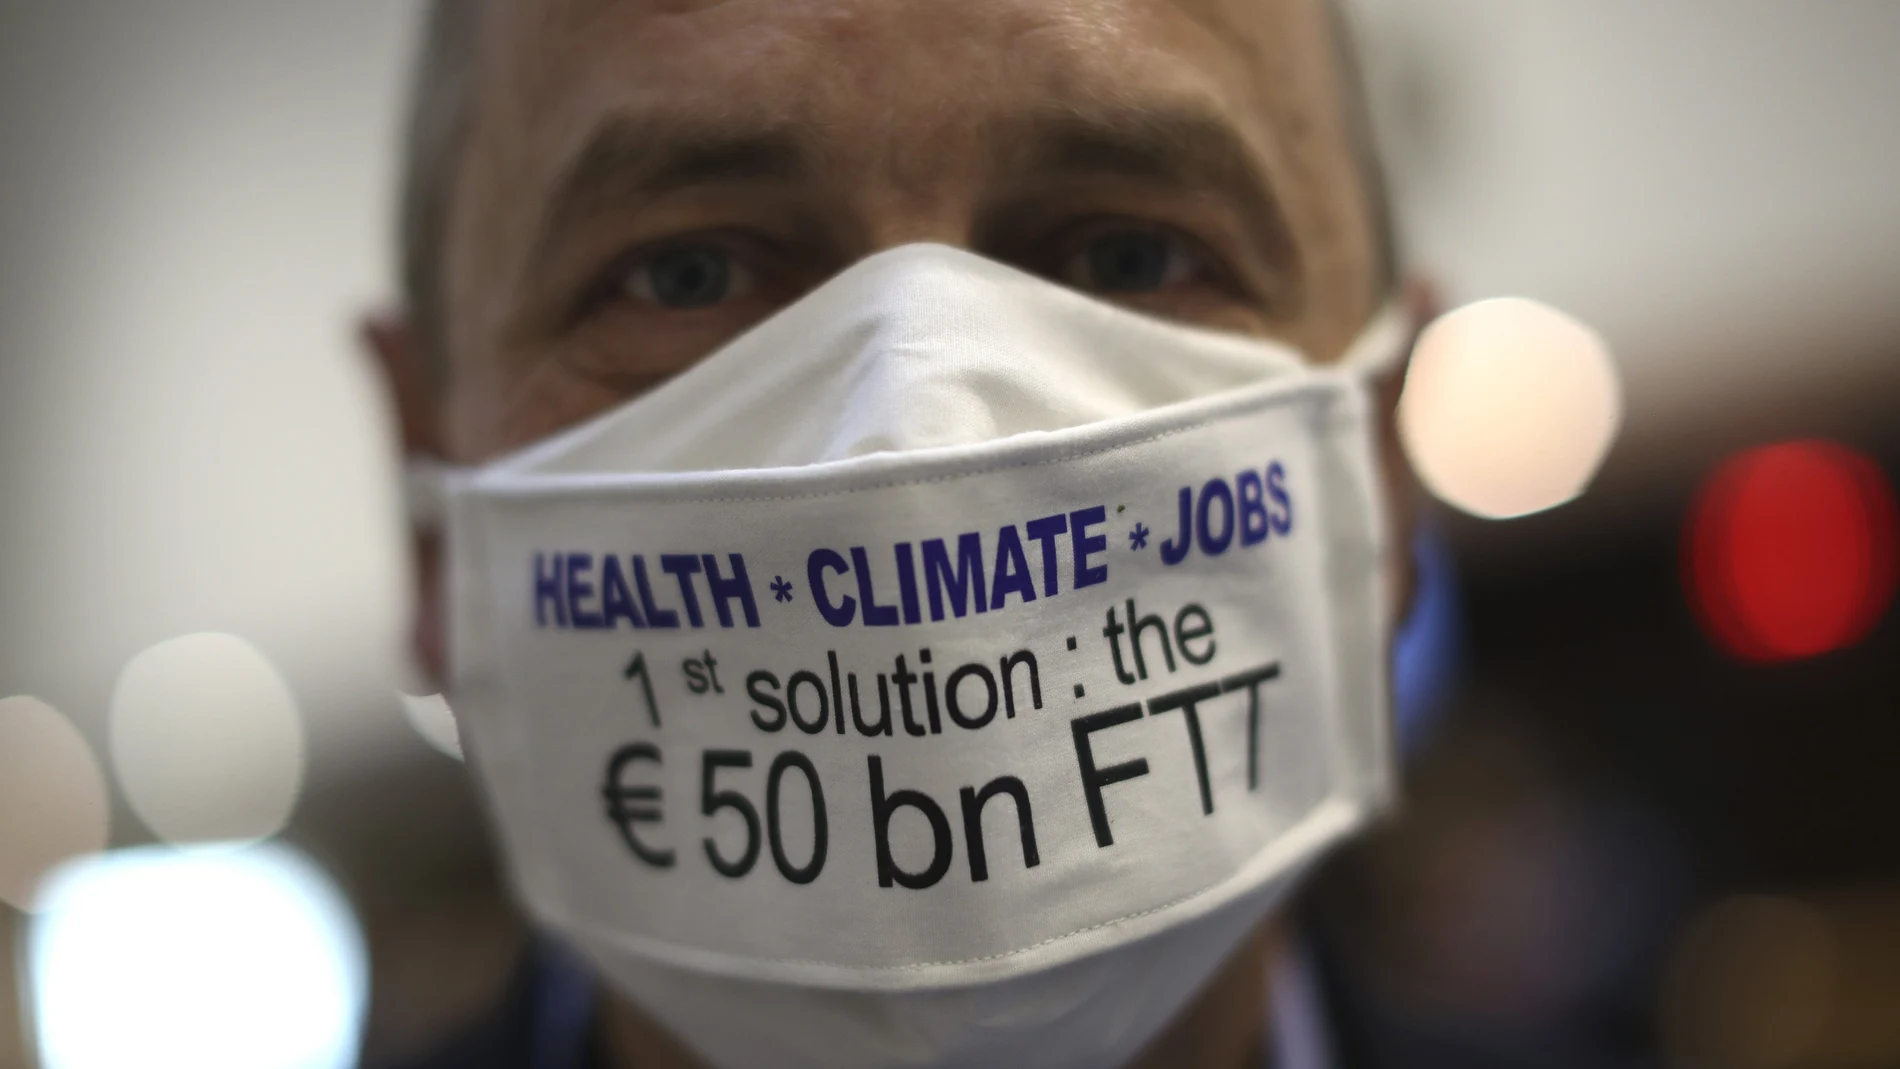 El eurodiputado socialista francés Pierre Larrouturou lleva una mascarilla con un mensaje a favor de gastar más en sanidad, clima y empleo